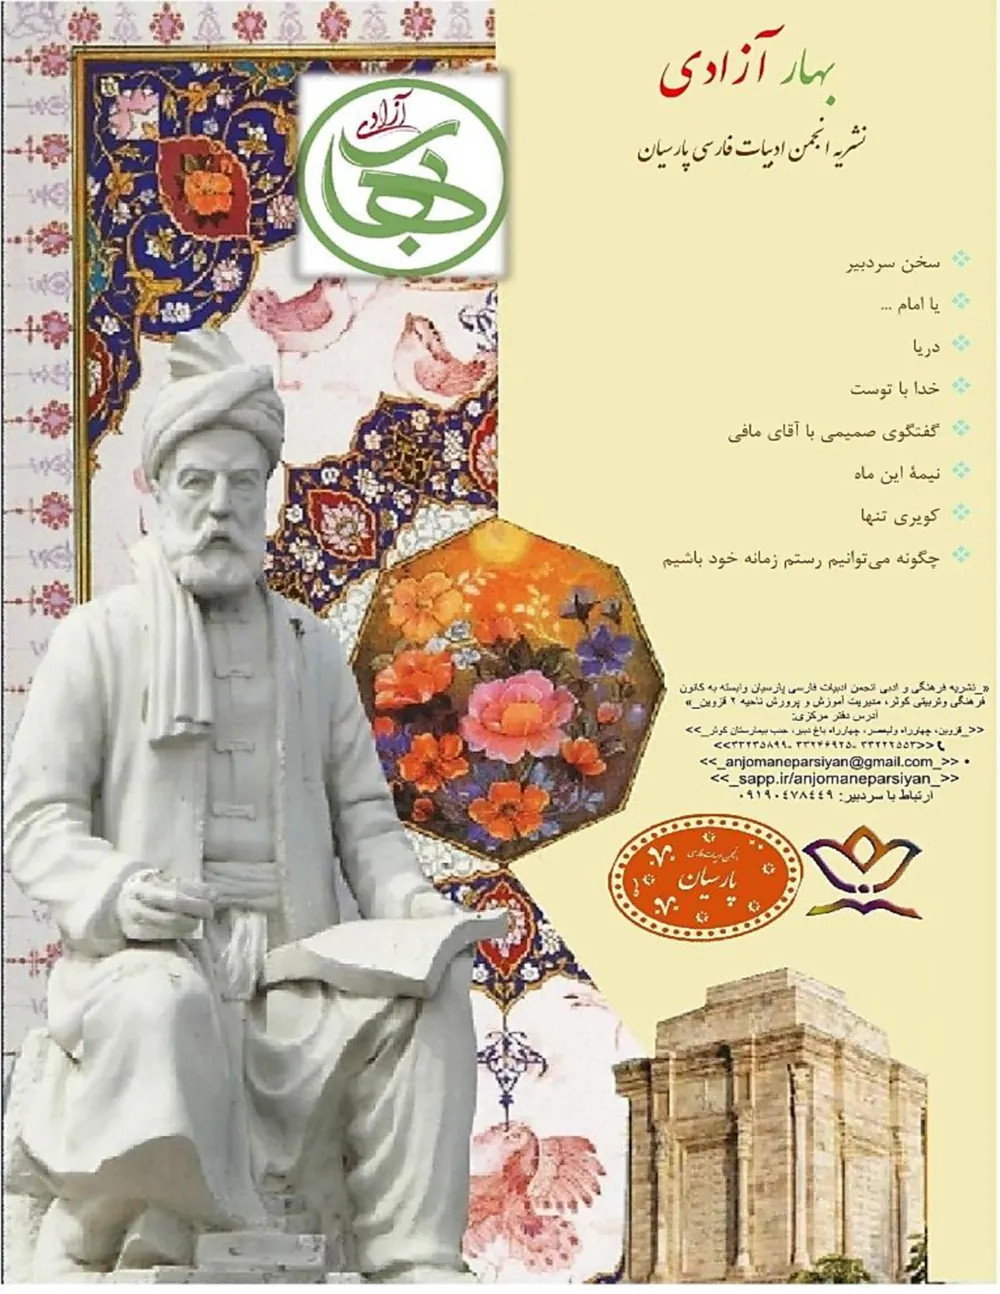 نشریه فرهنگی و ادبی بهار آزادی - شماره ۱ - تیر ۱۳۹۹